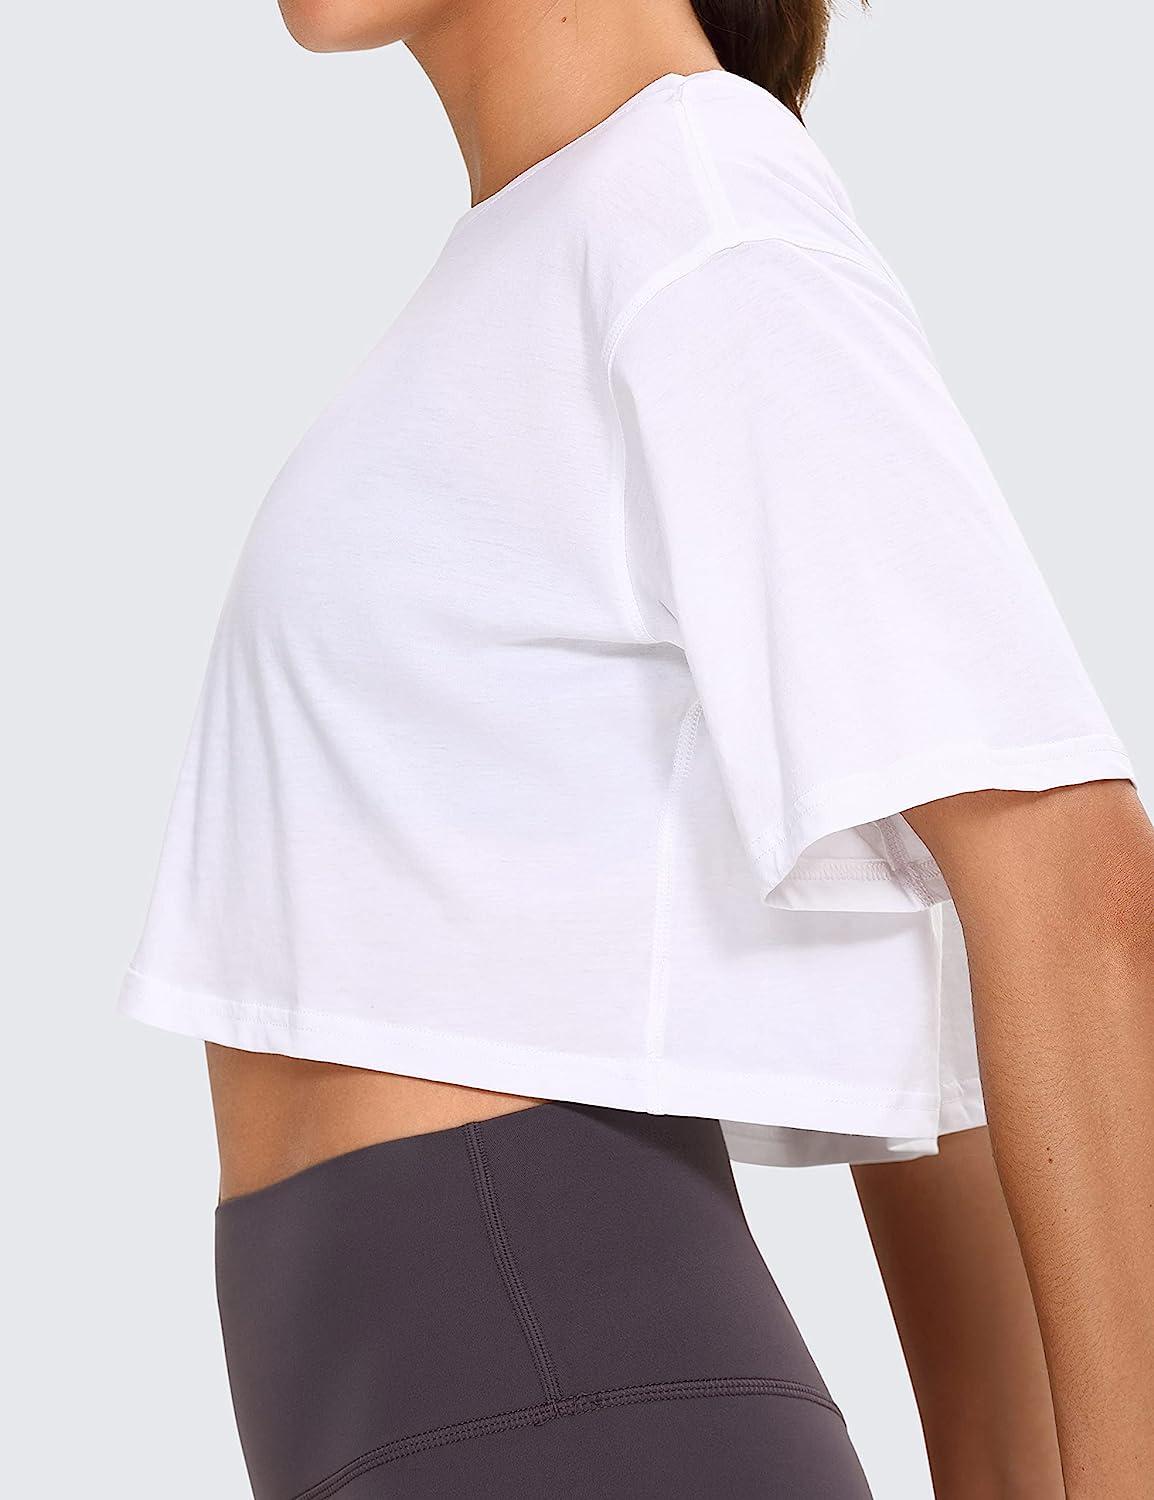 CRZ YOGA Women's Seamless Active Tops Short Sleeve Workout Running Sports  Leisure T-Shirt